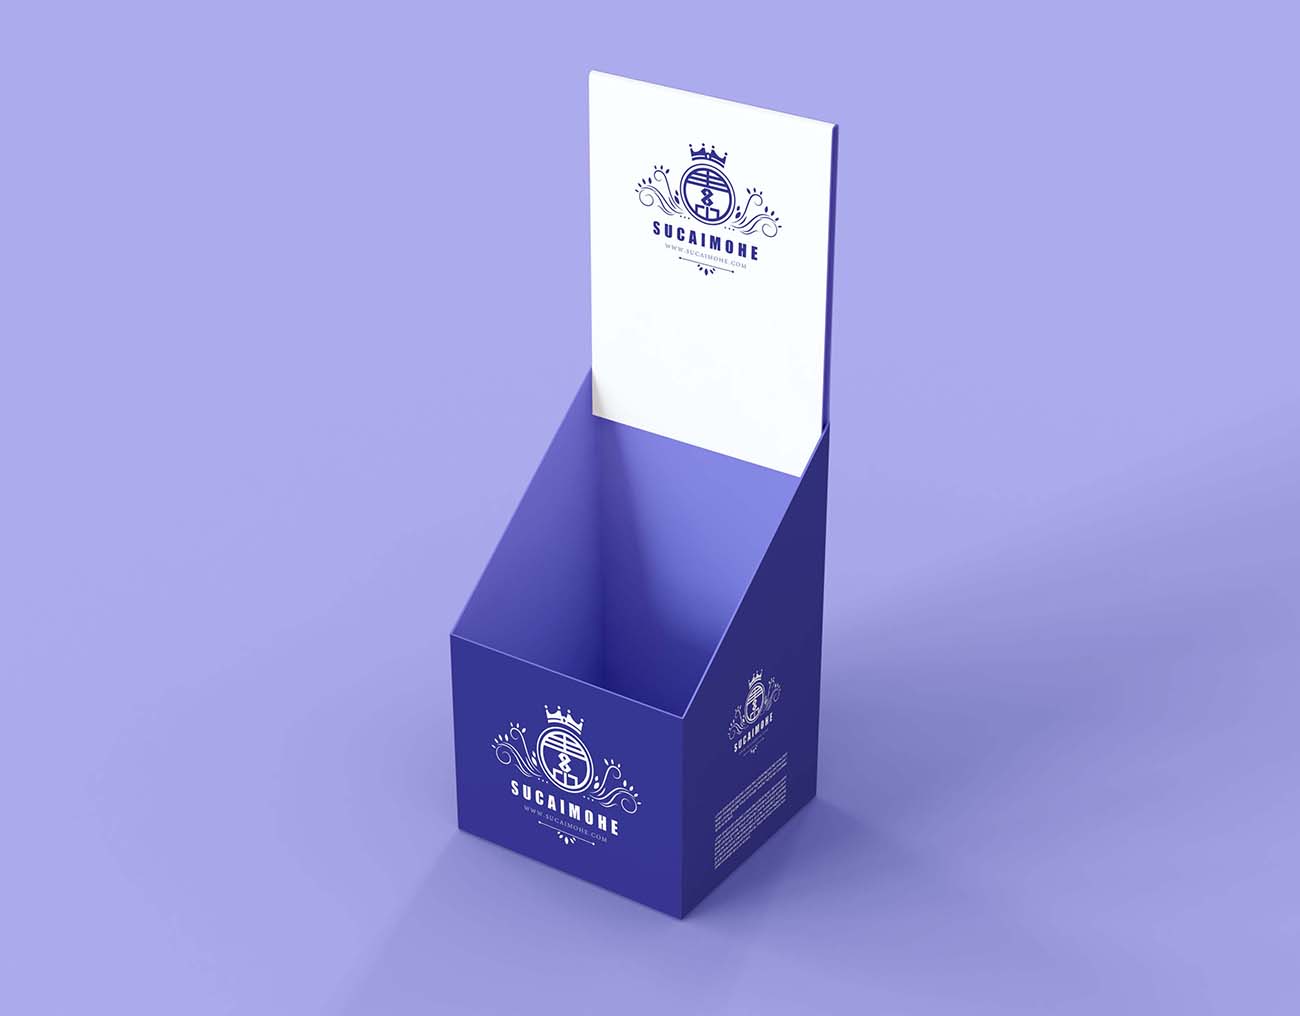 高角度极简主义紫色参展纸质餐盒样机Psd源文件-high-angle-minimalist-purple-exhibitor-mock-up